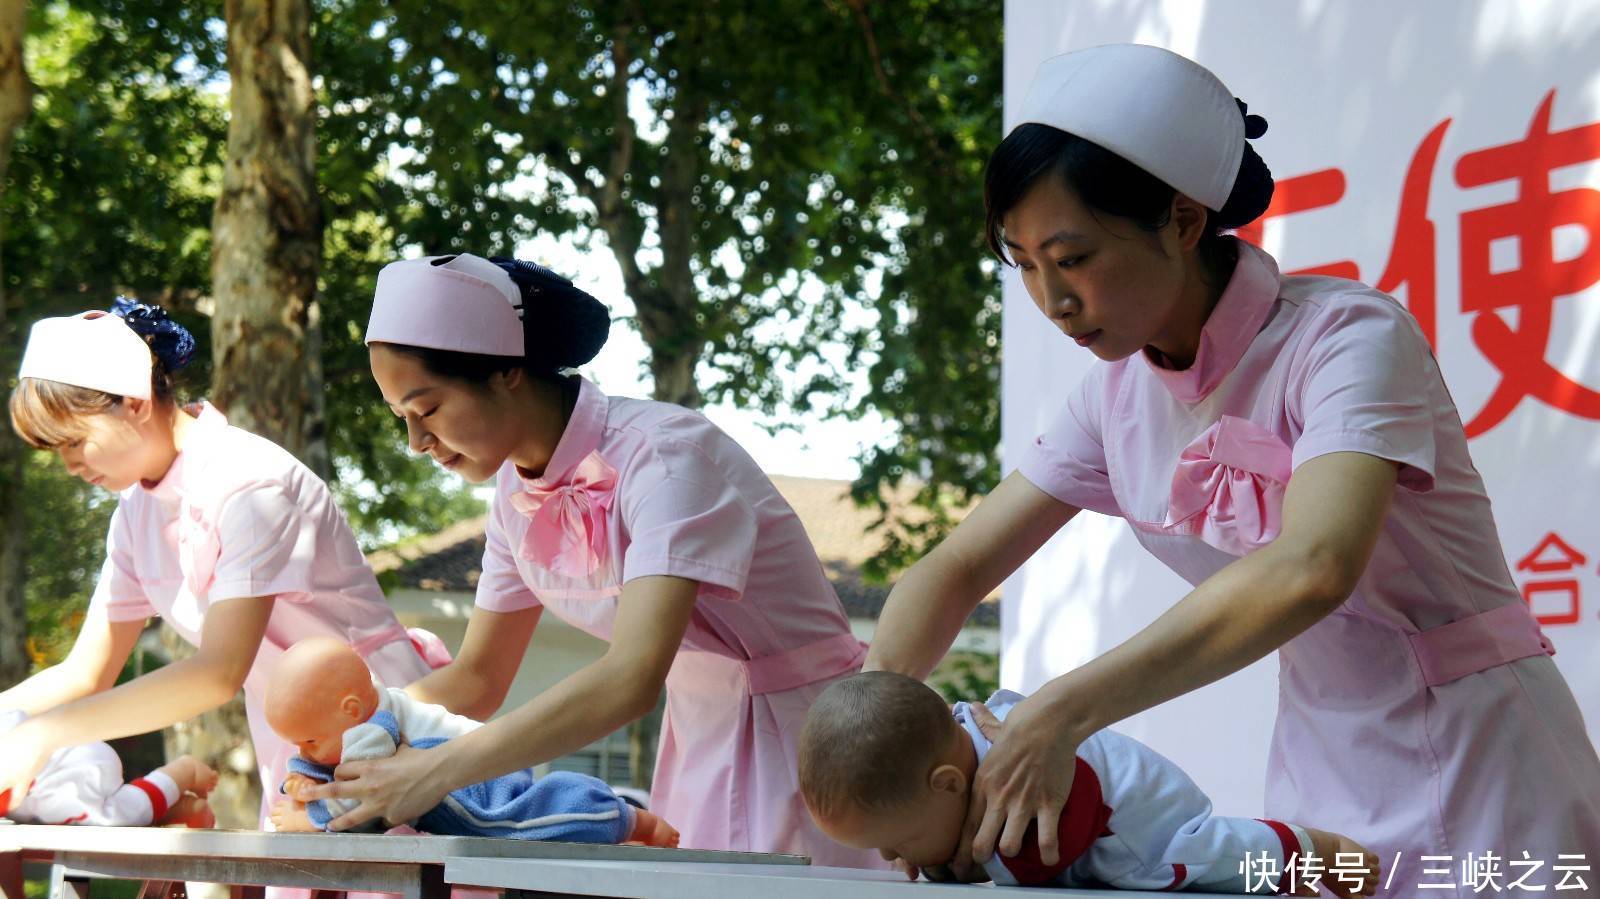 5月12日国际护士节,我国注册护士超过380万人